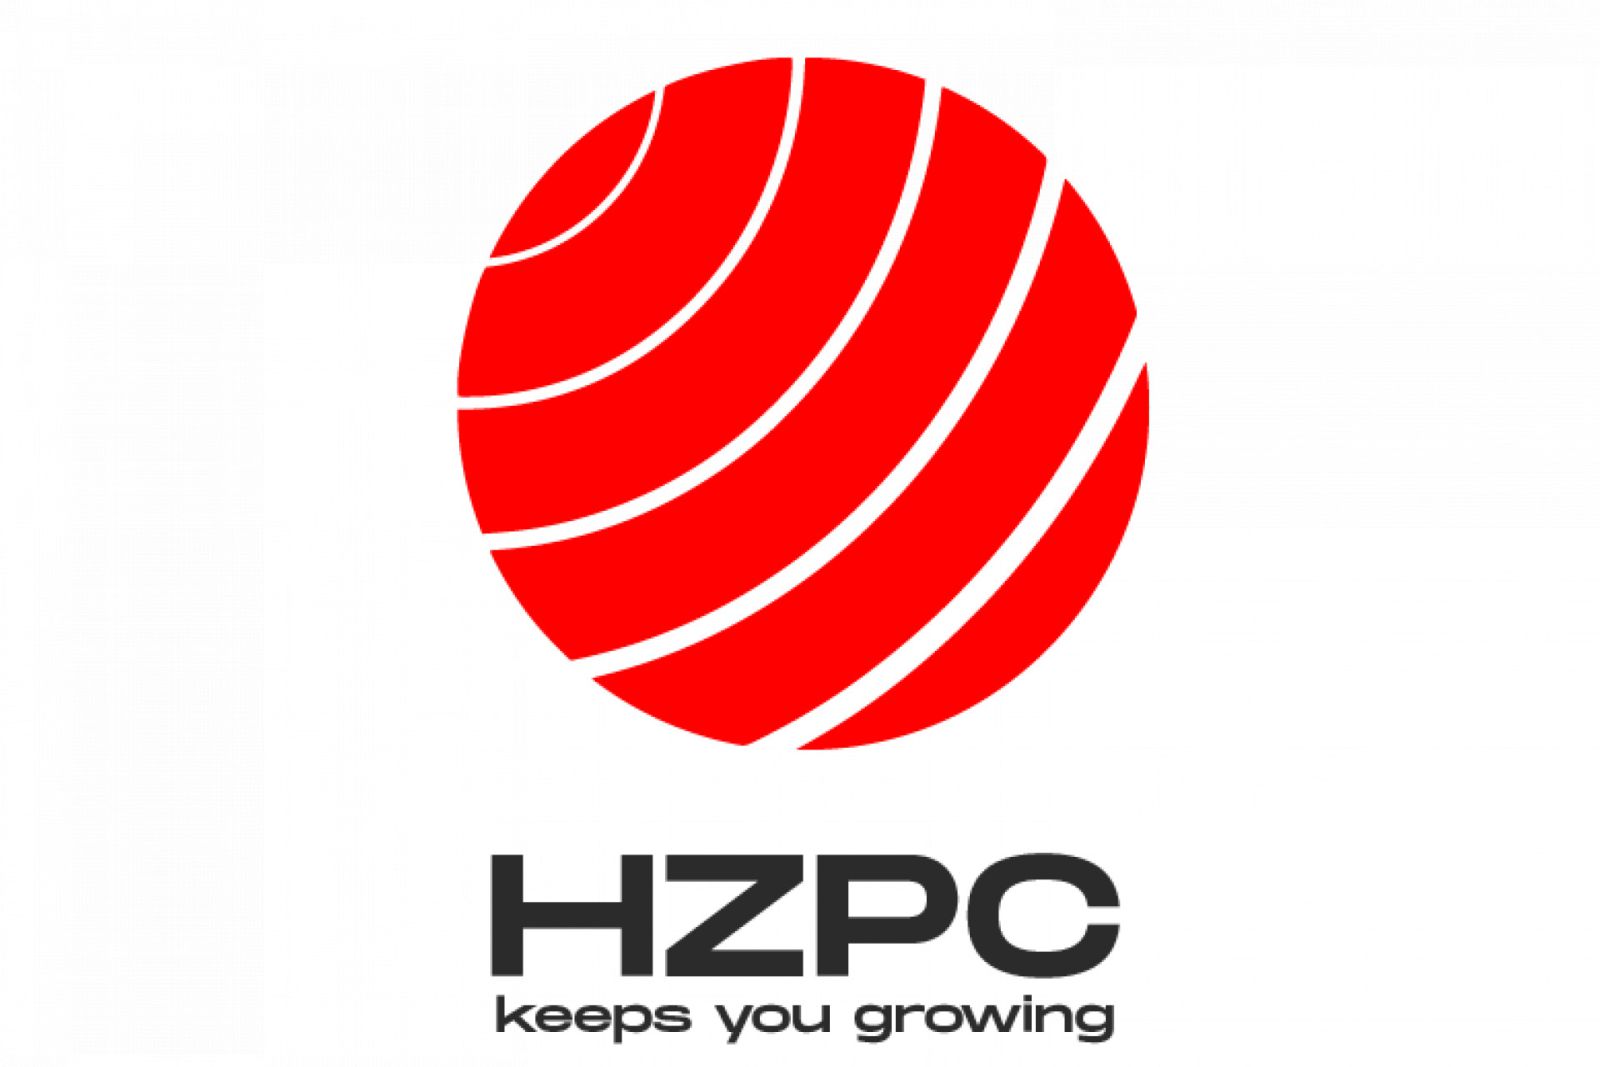 HPZC logo 